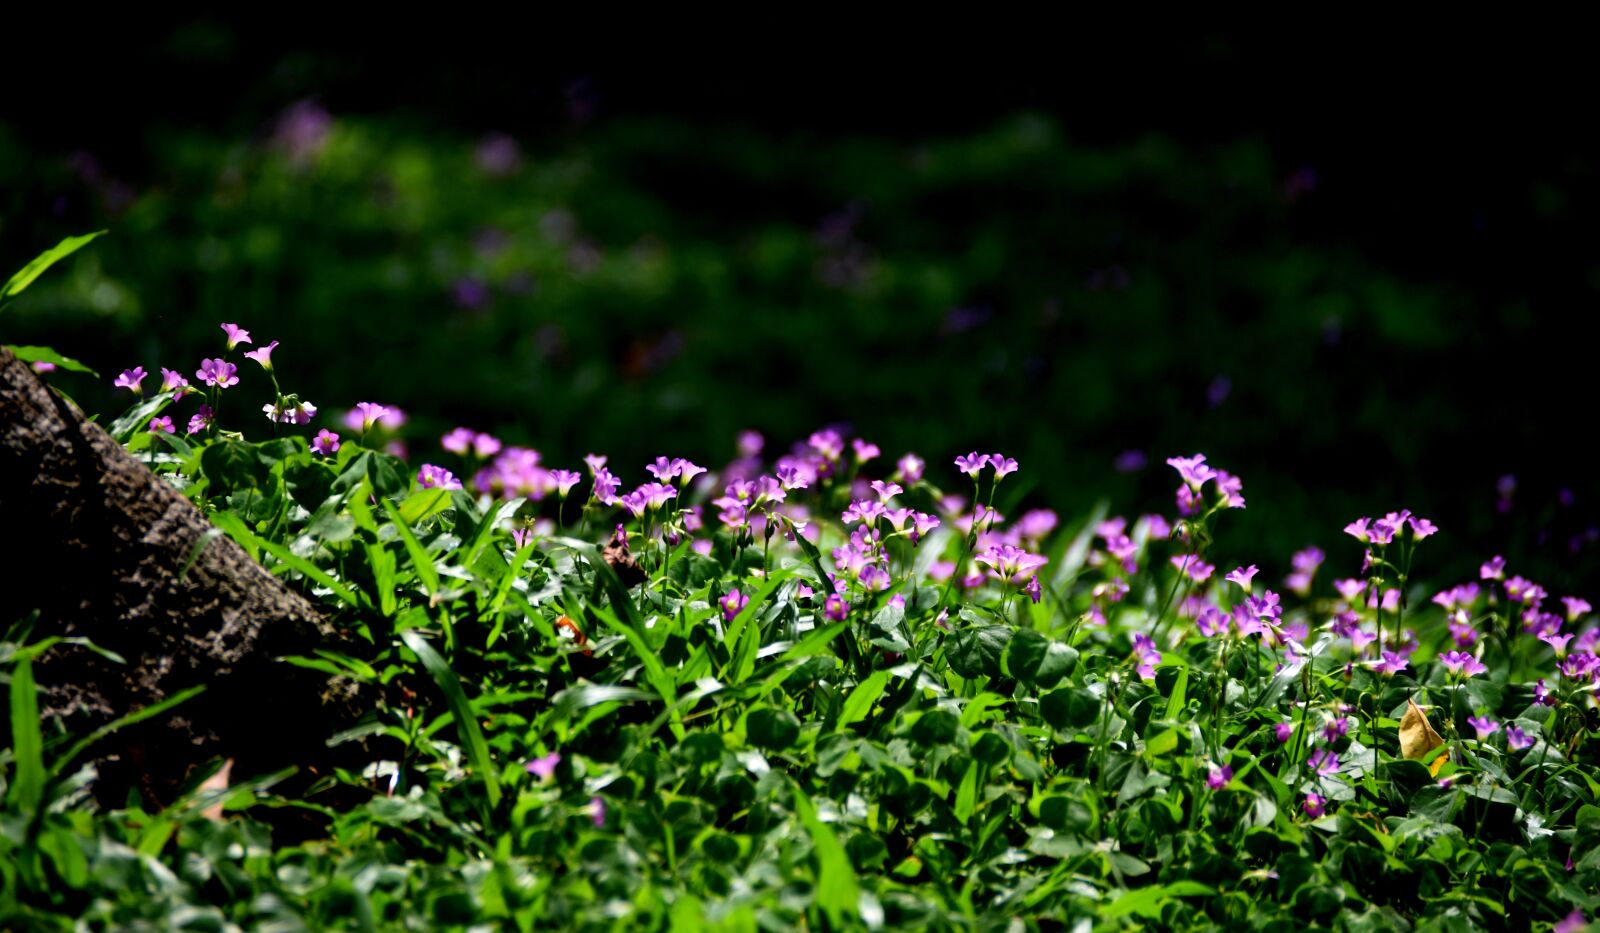 Nikon D7200 sample photo. Sour flowers, purple, light photography